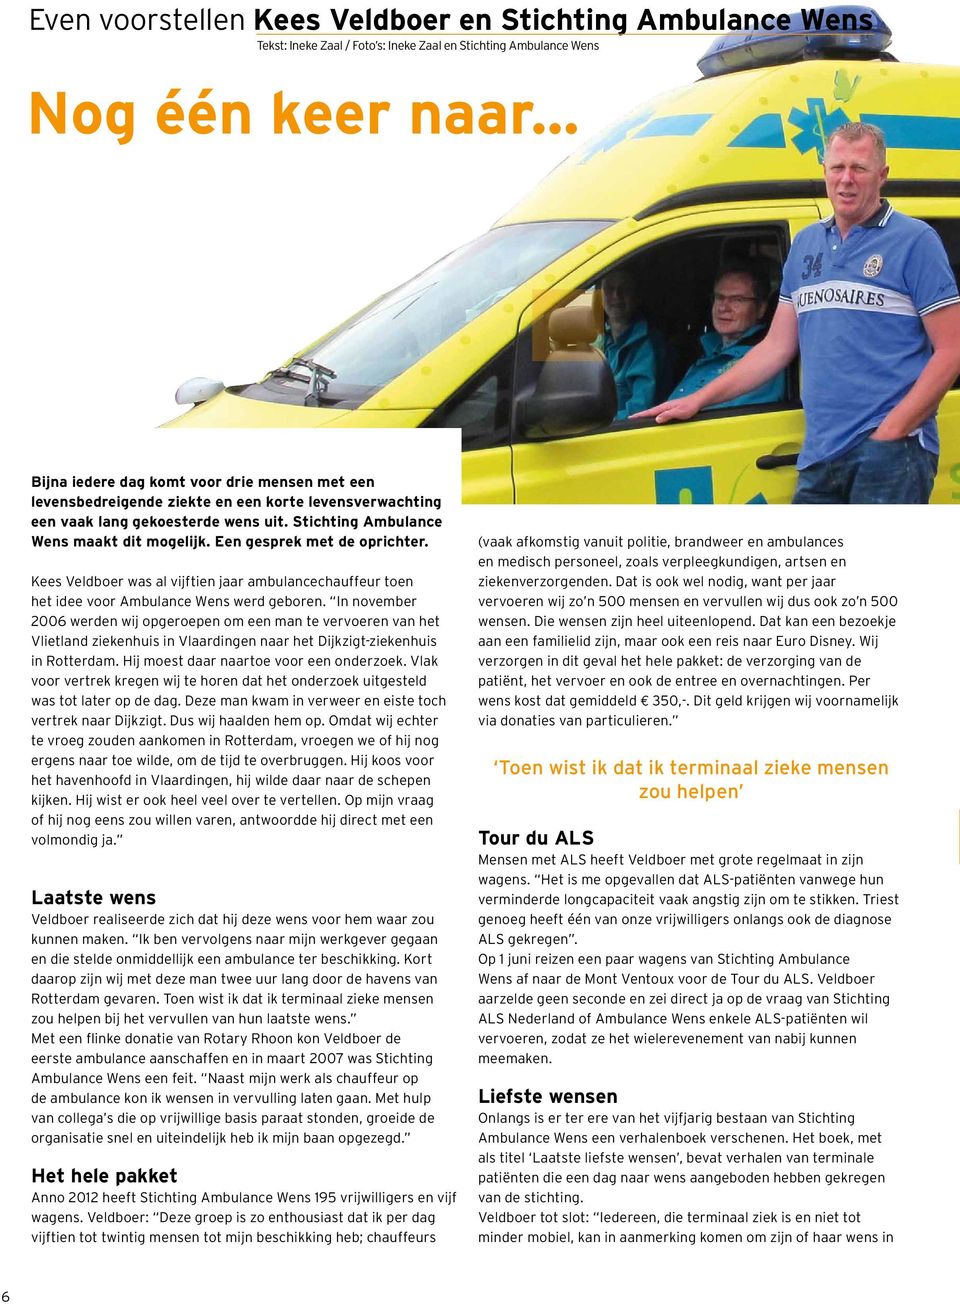 Een gesprek met de oprichter. Kees Veldboer was al vijftien jaar ambulancechauffeur toen het idee voor Ambulance Wens werd geboren.